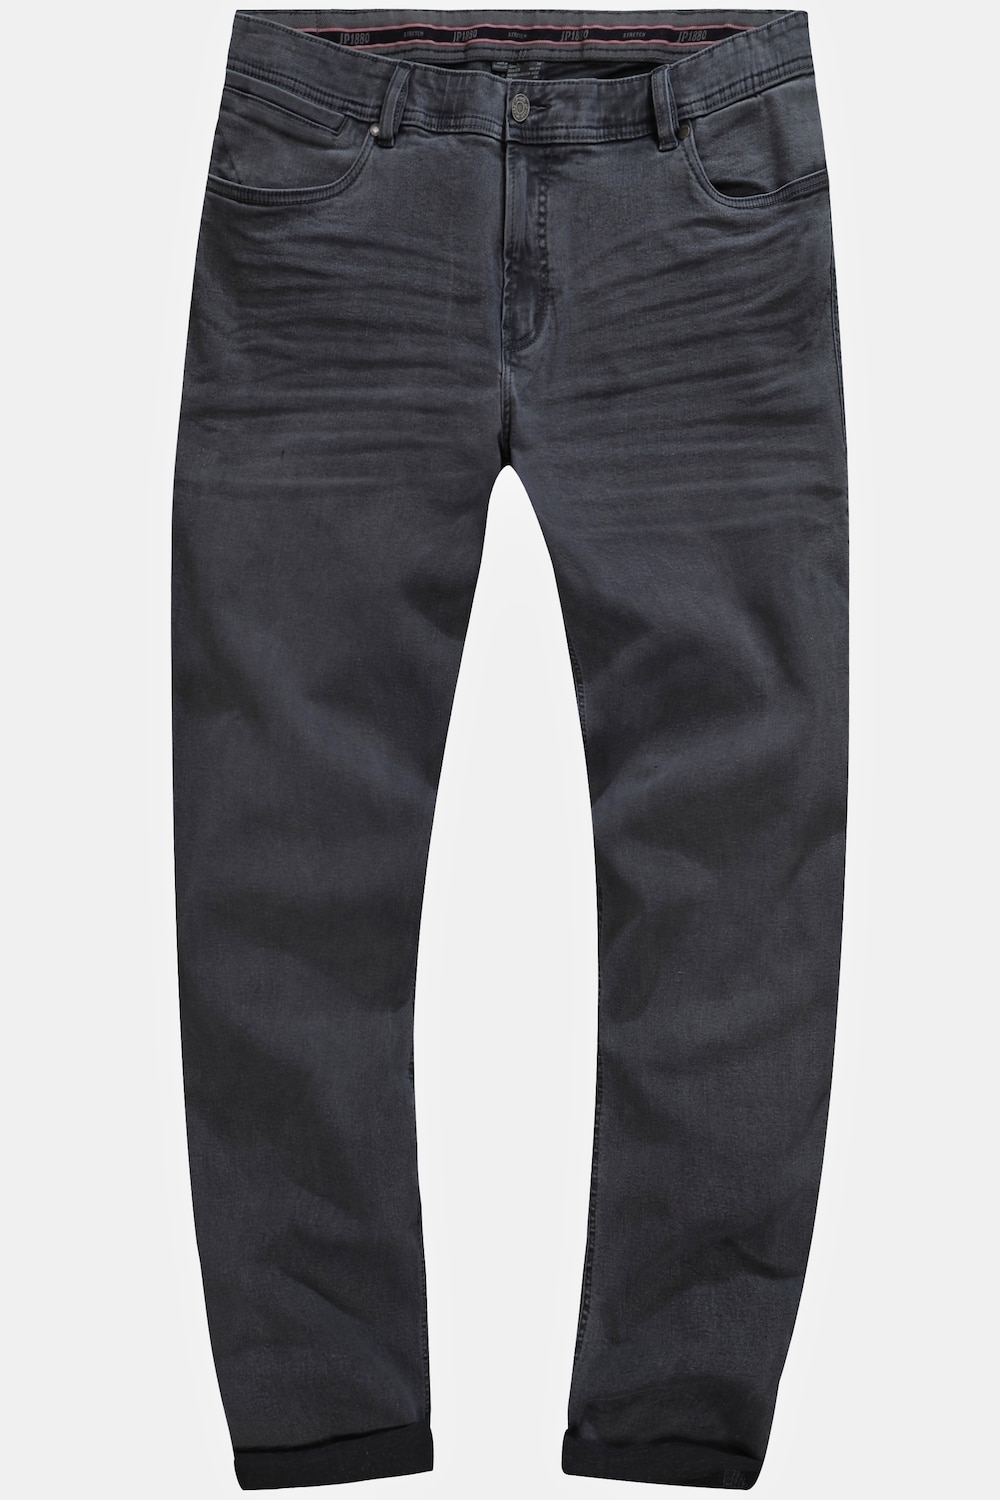 Grote Maten Jeans, Heren, grijs, Maat: 64, Katoen, JP1880